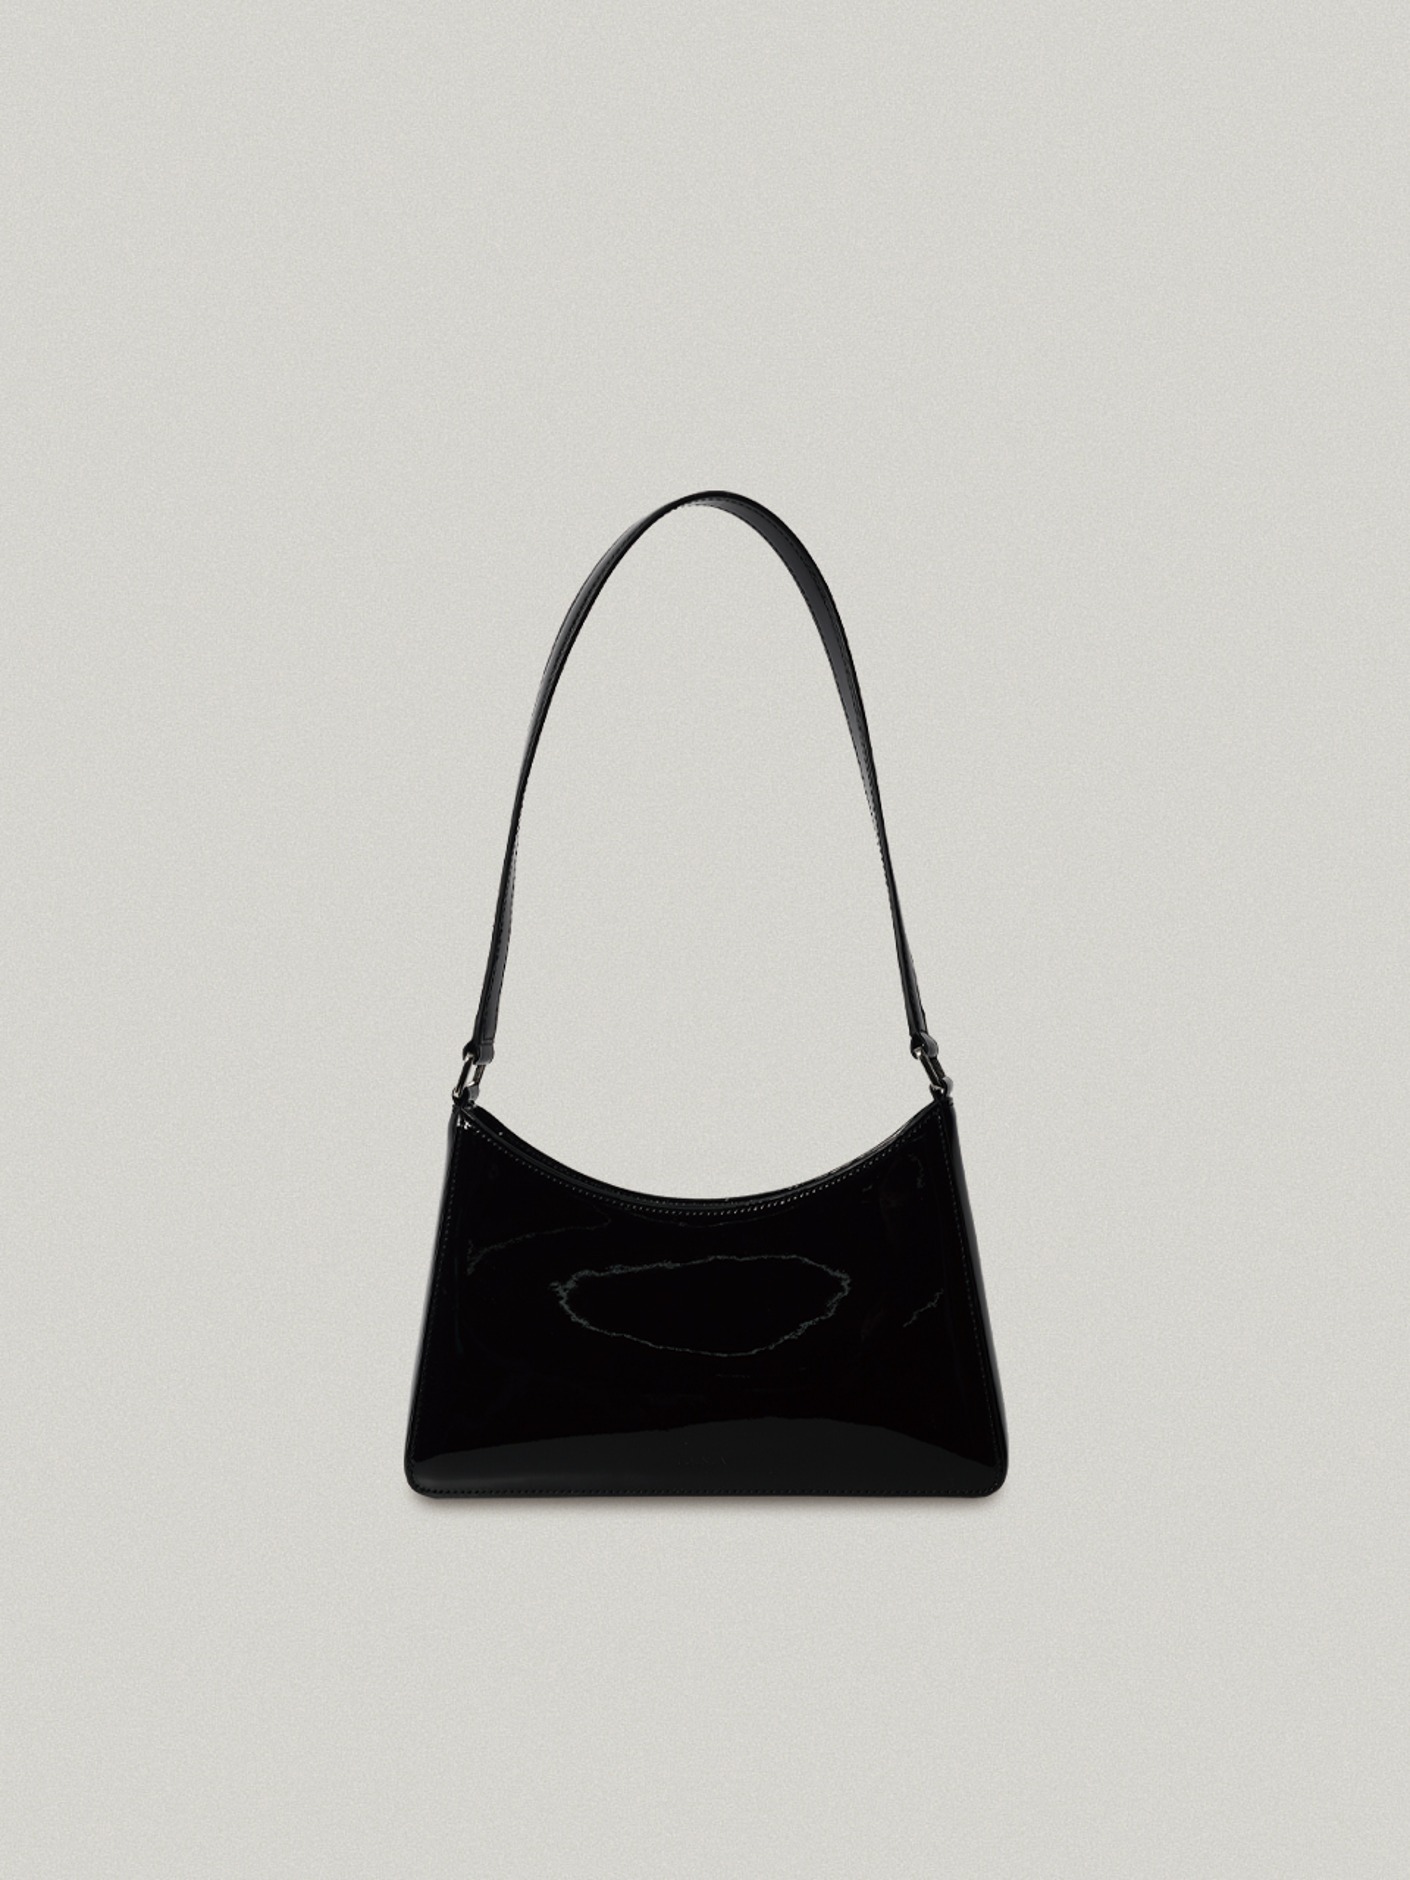 [LIMITED] Arc bag Black - Enamel아크백 - 에나멜